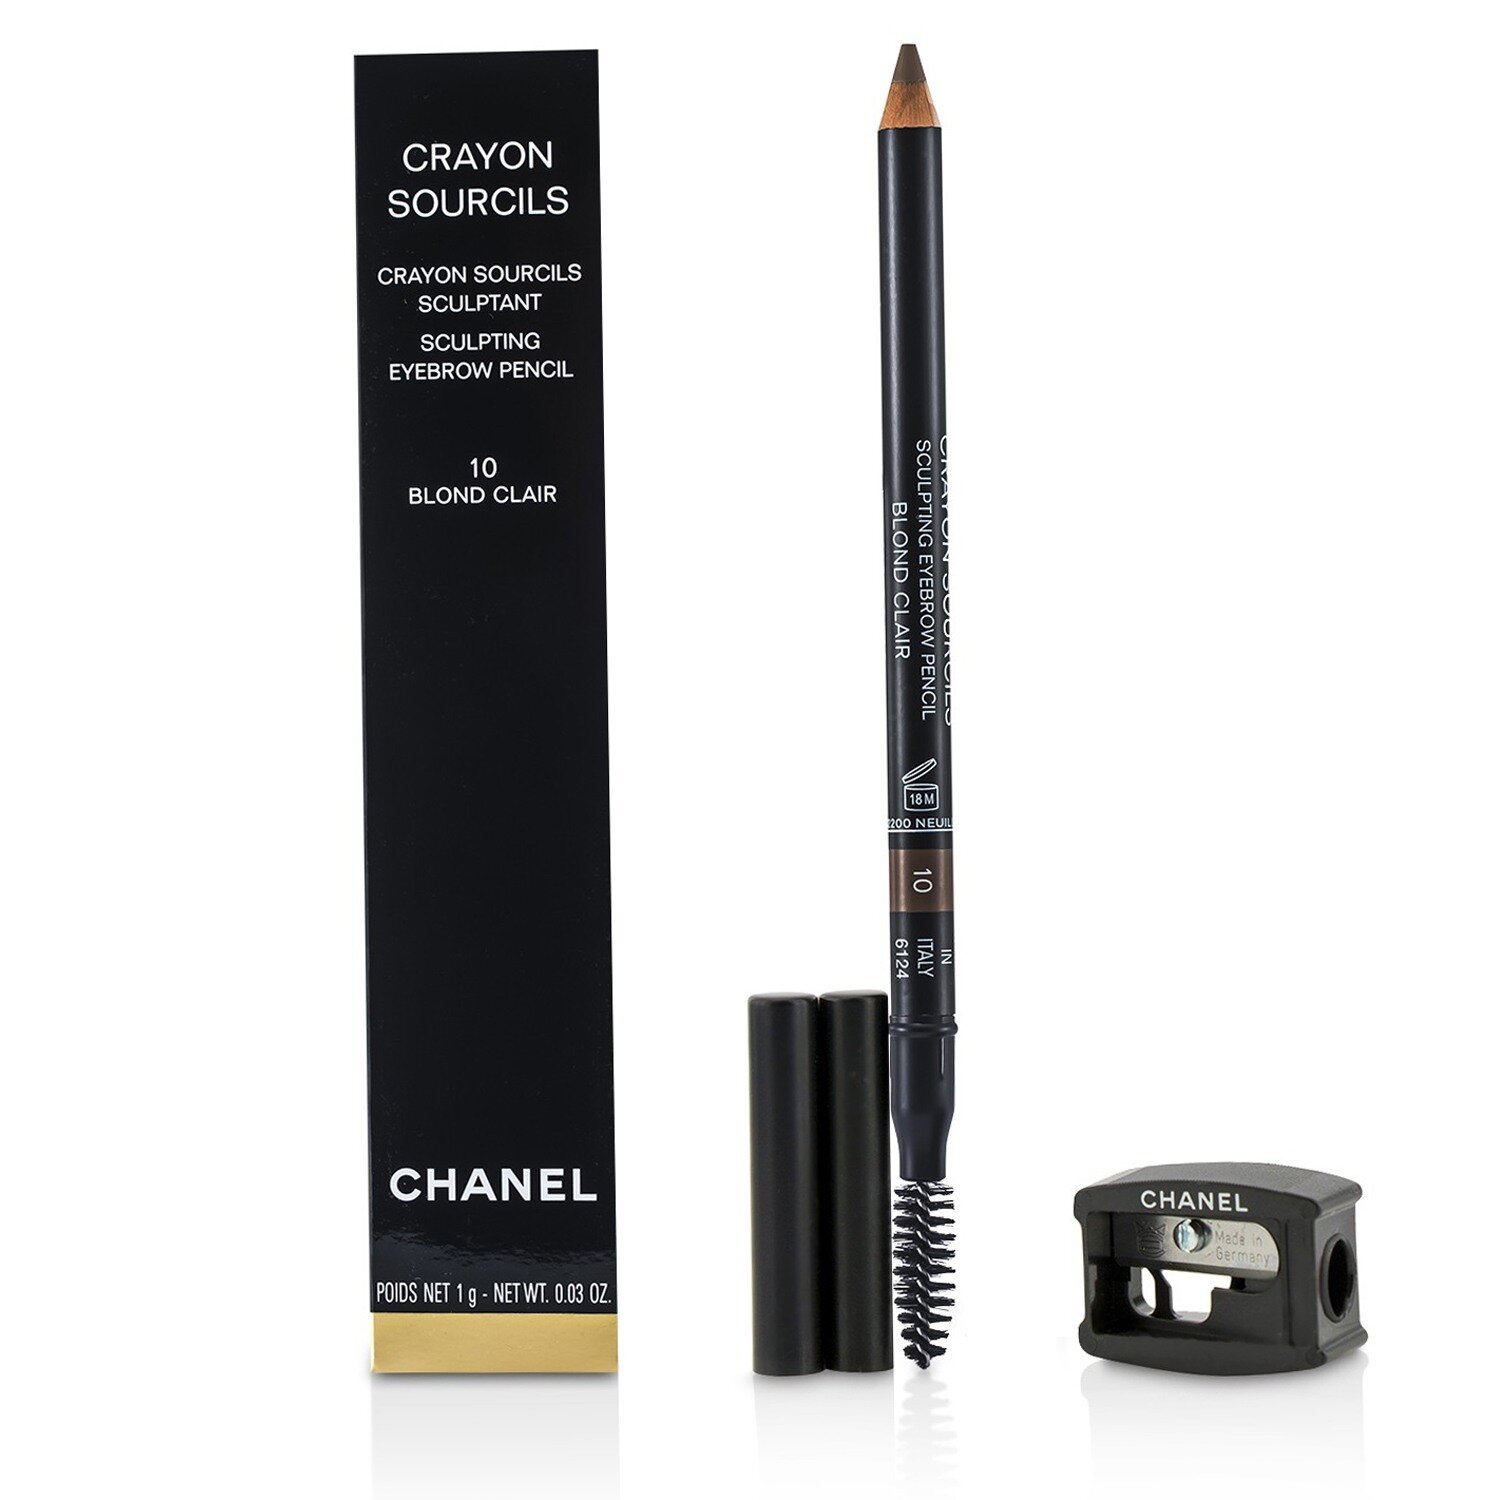 Chanel eyebrow pencil - Vinted